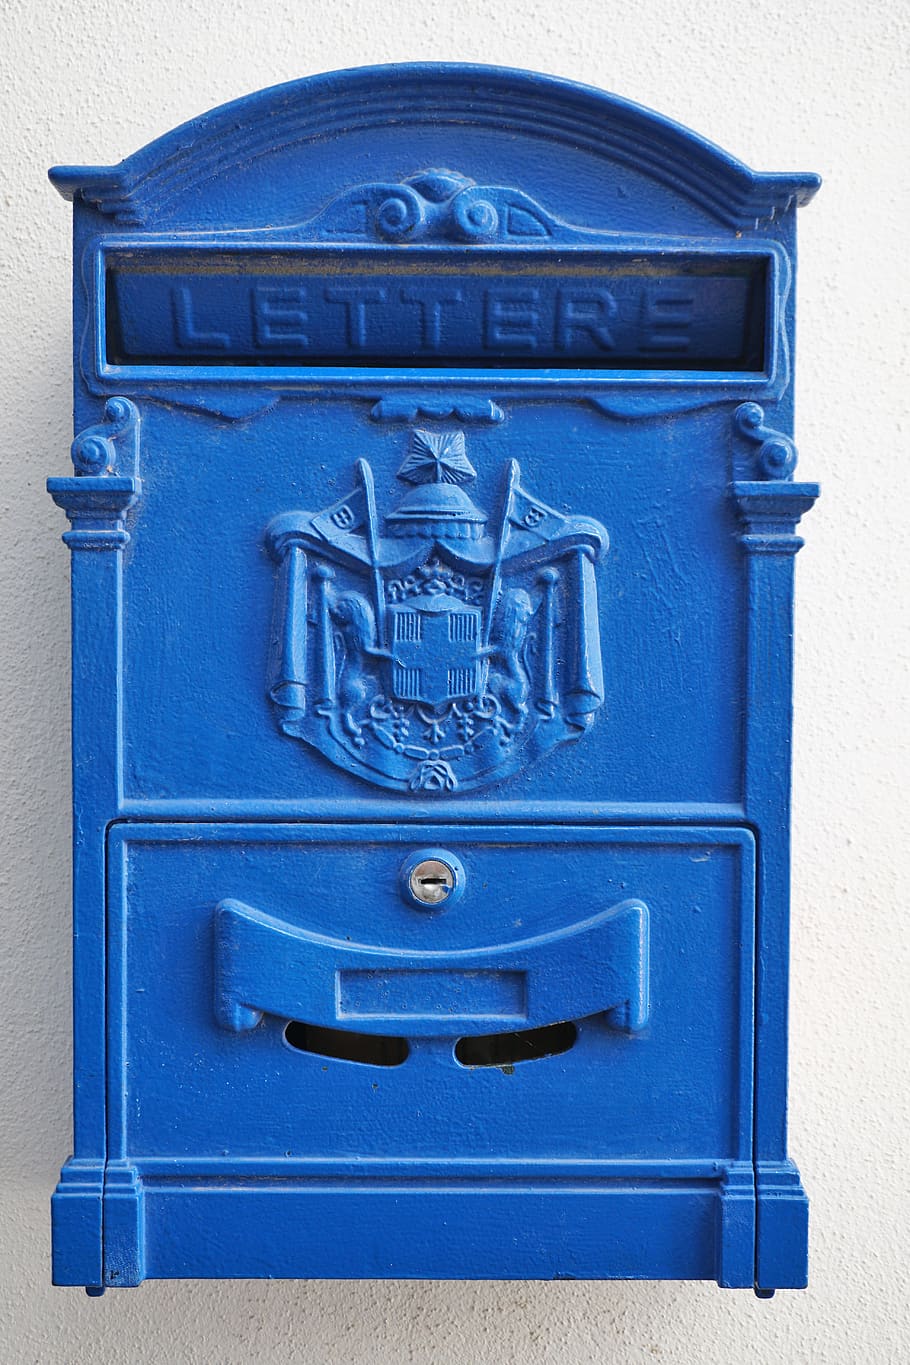 caixa de correio, caixas de correio, postar, metal, post einwurf, azul, parede, carta, correio, comunicação